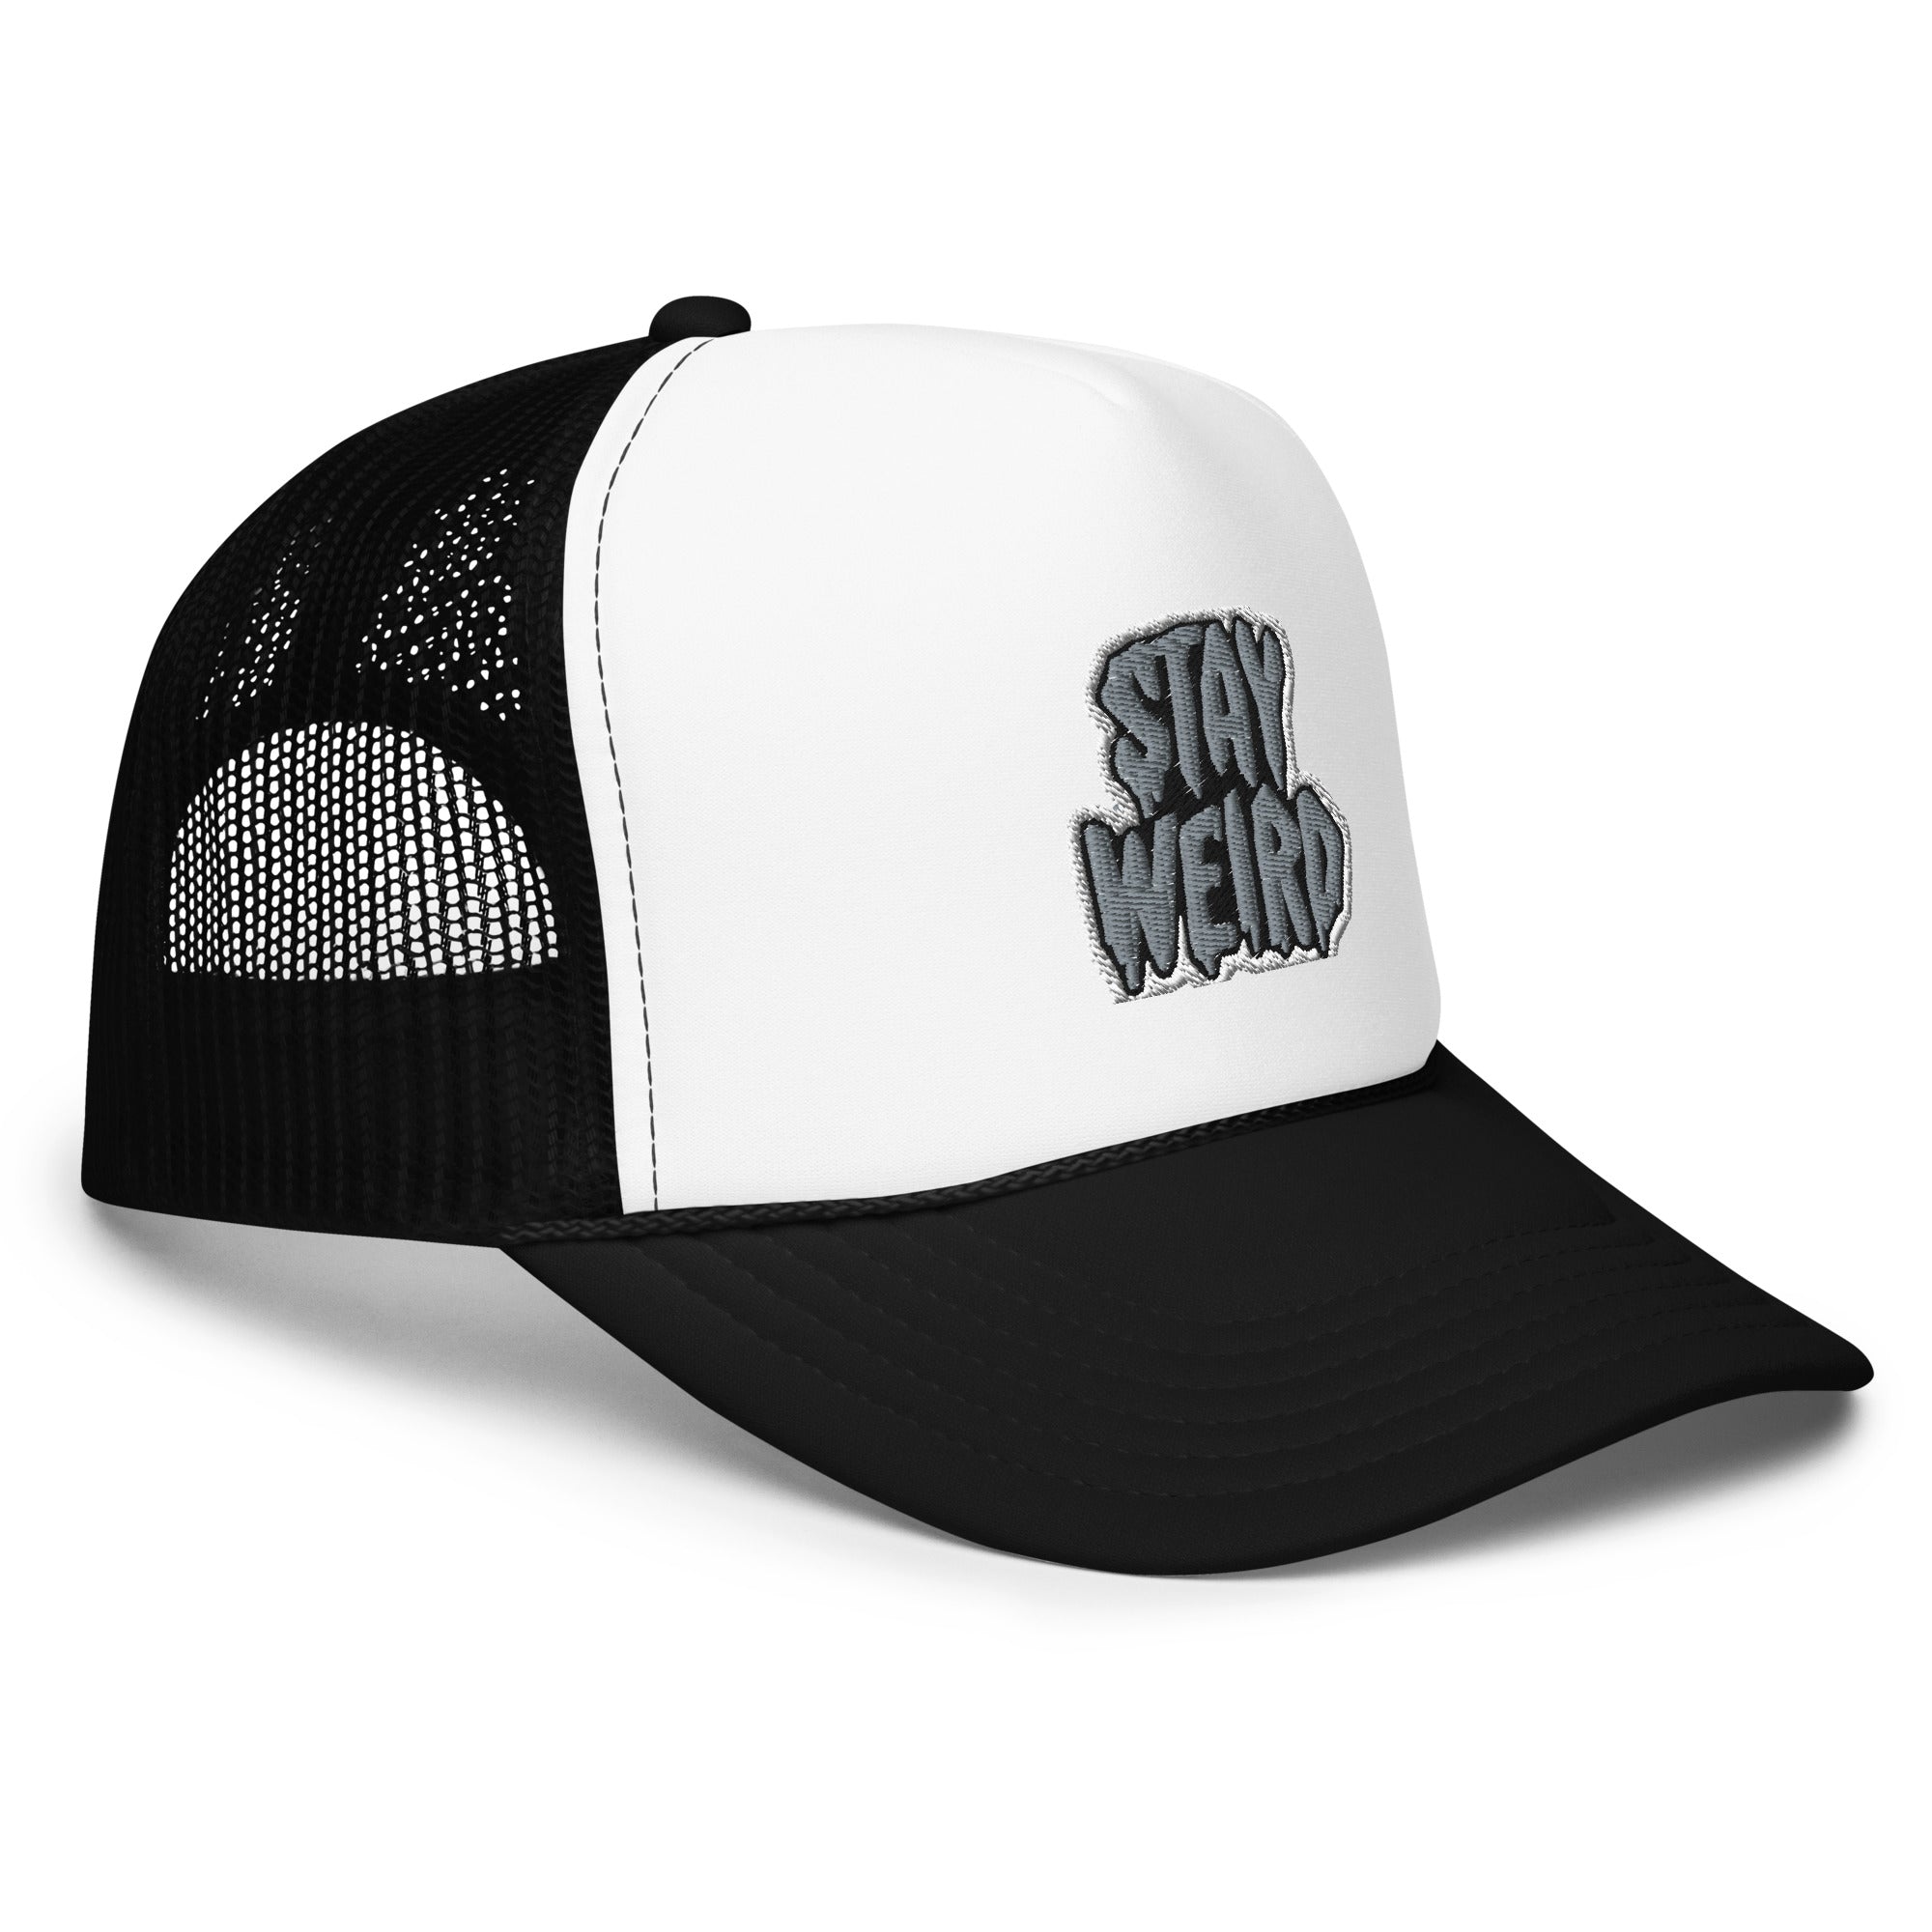 Stay Weird- Trucker Hat – 727.SZN™